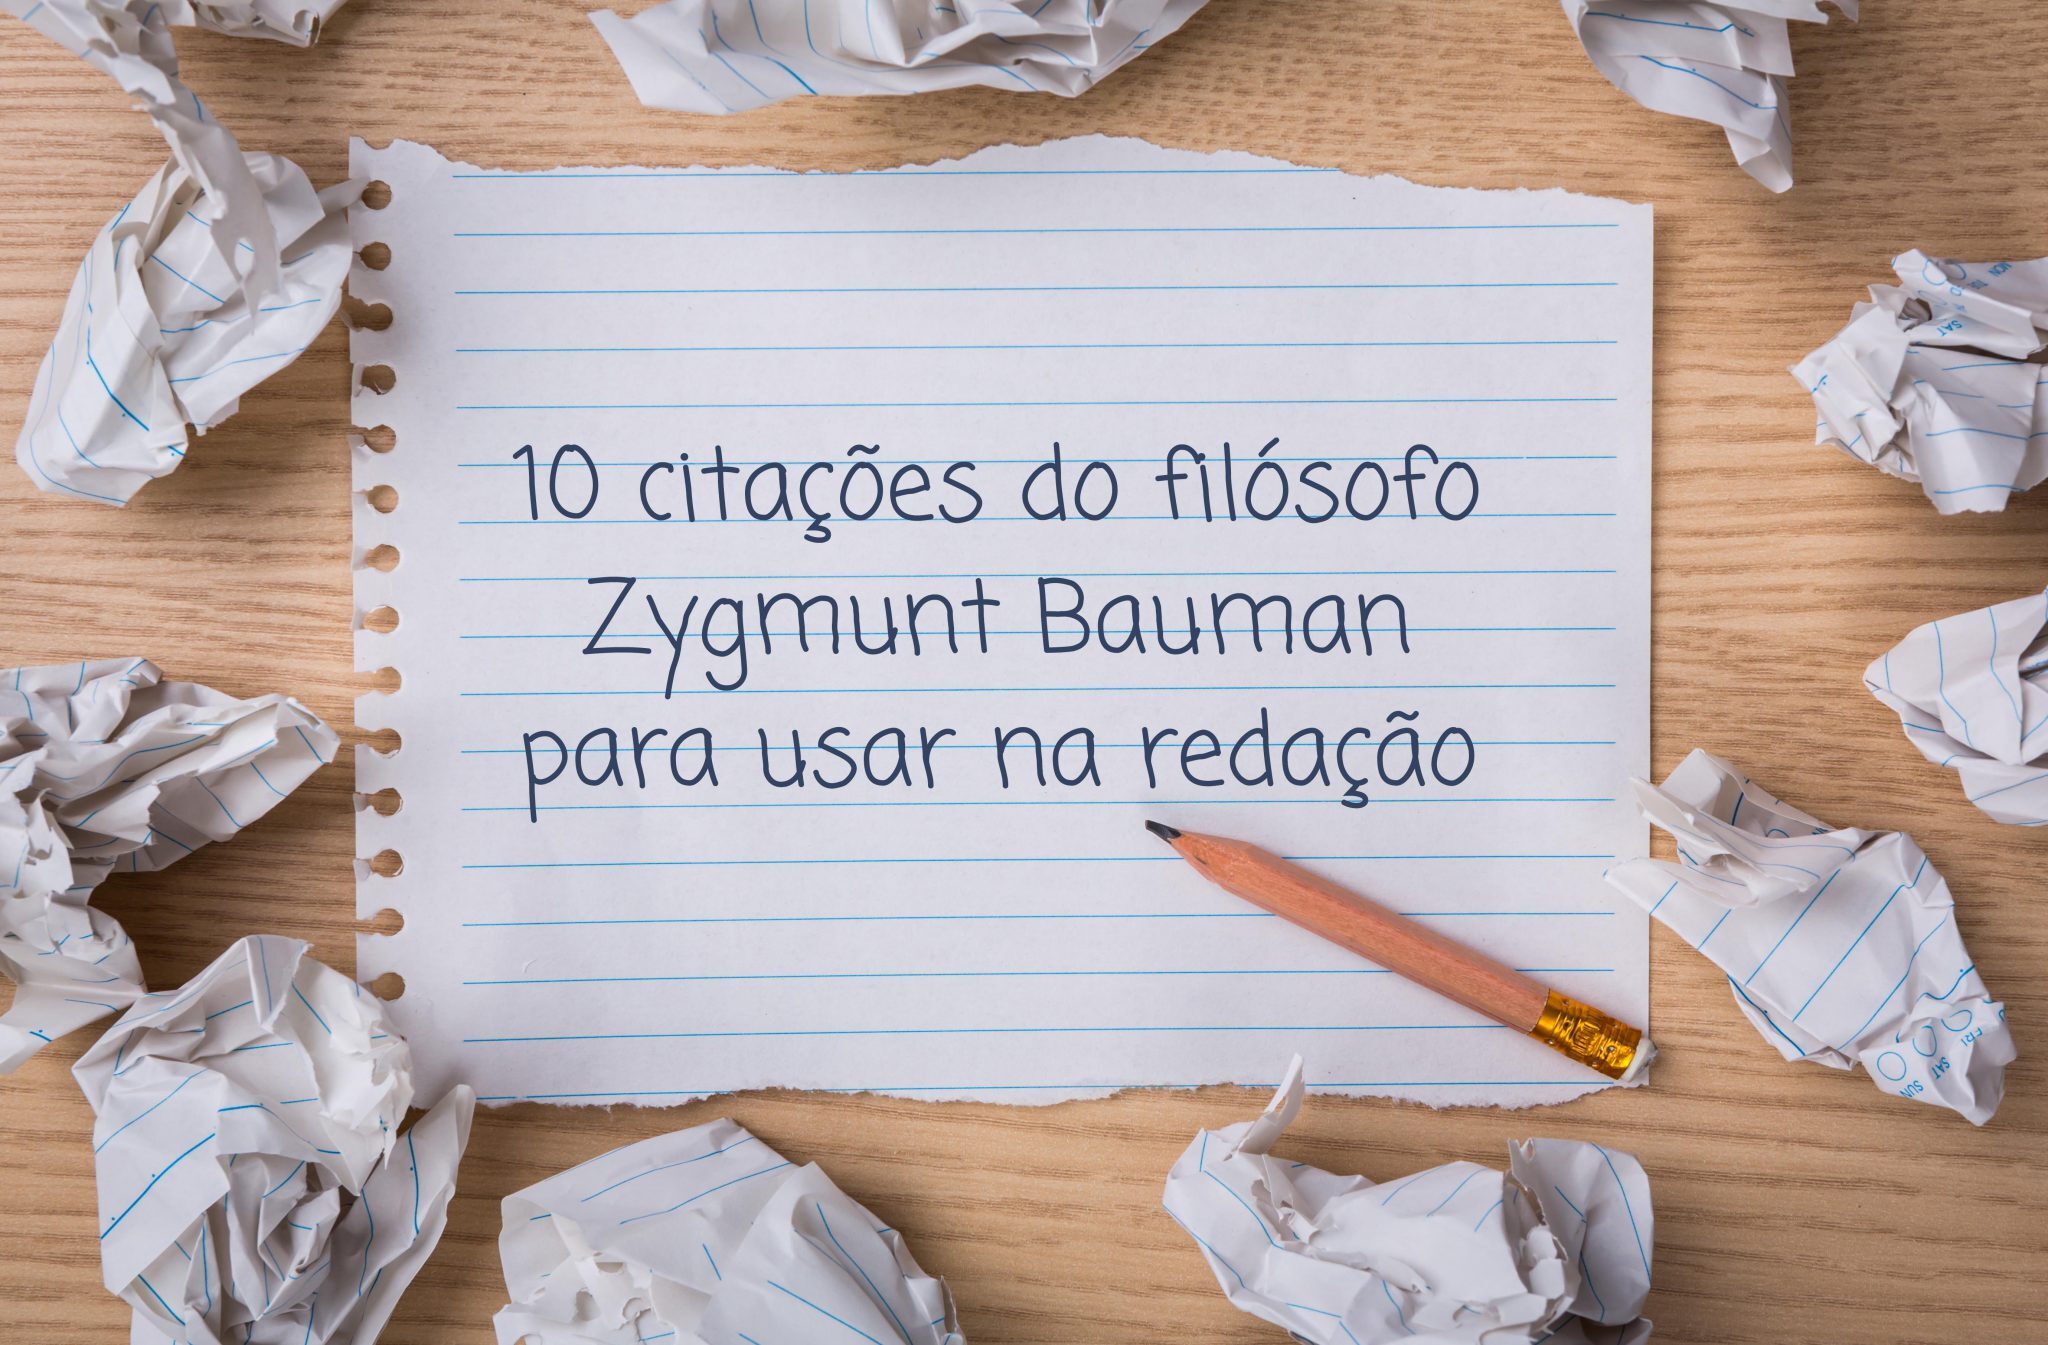 10 citações do filósofo Zygmunt Bauman para usar na redação | Imaginie